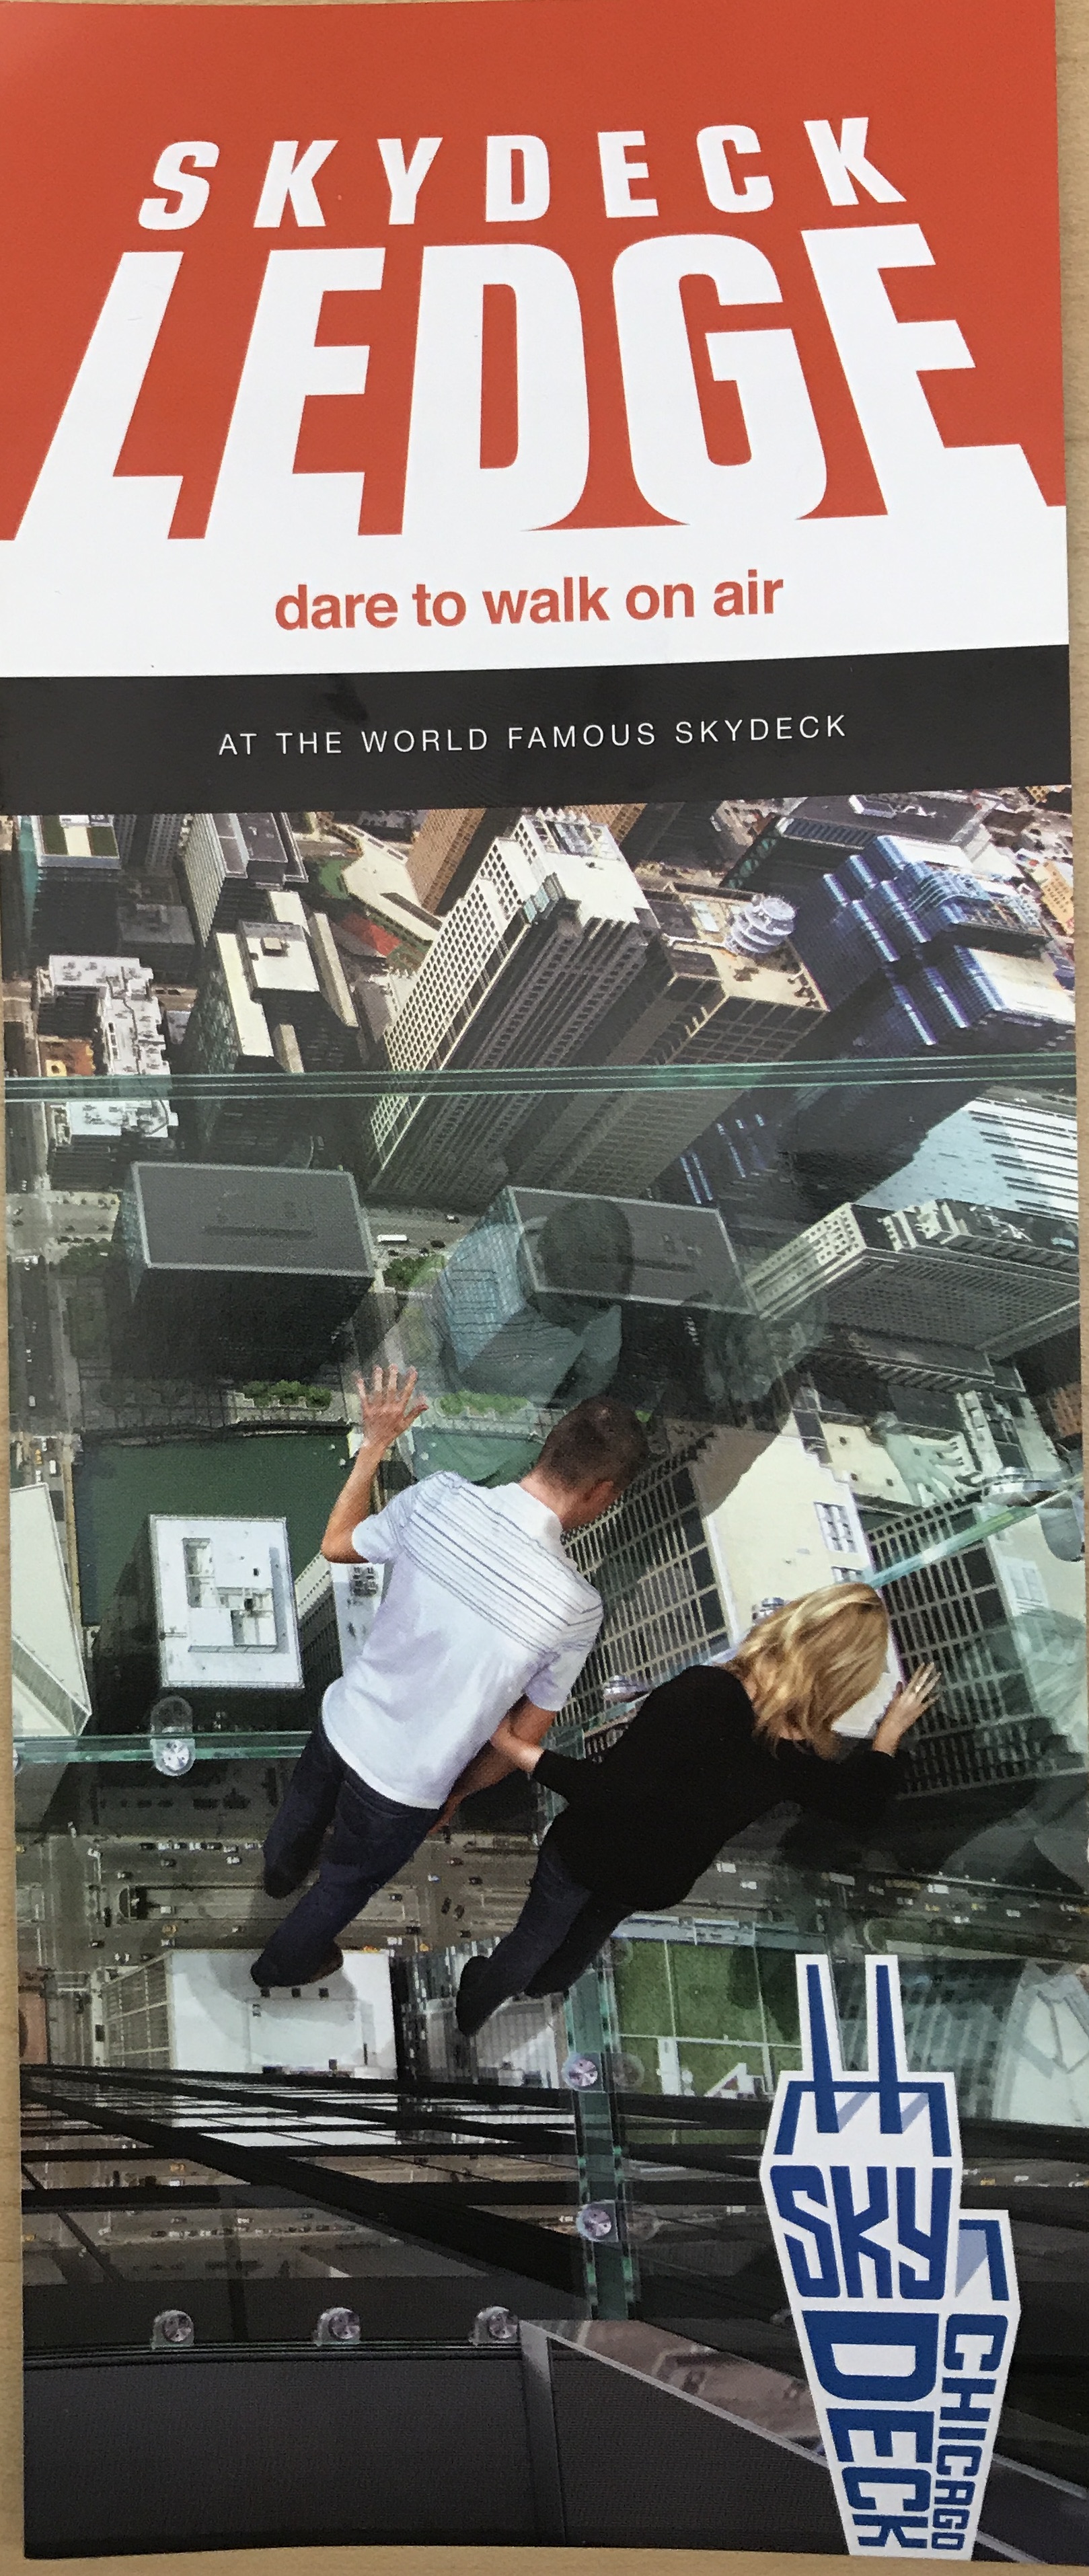 Chicago willis tower skydeck ledge Information pamphlet information 1